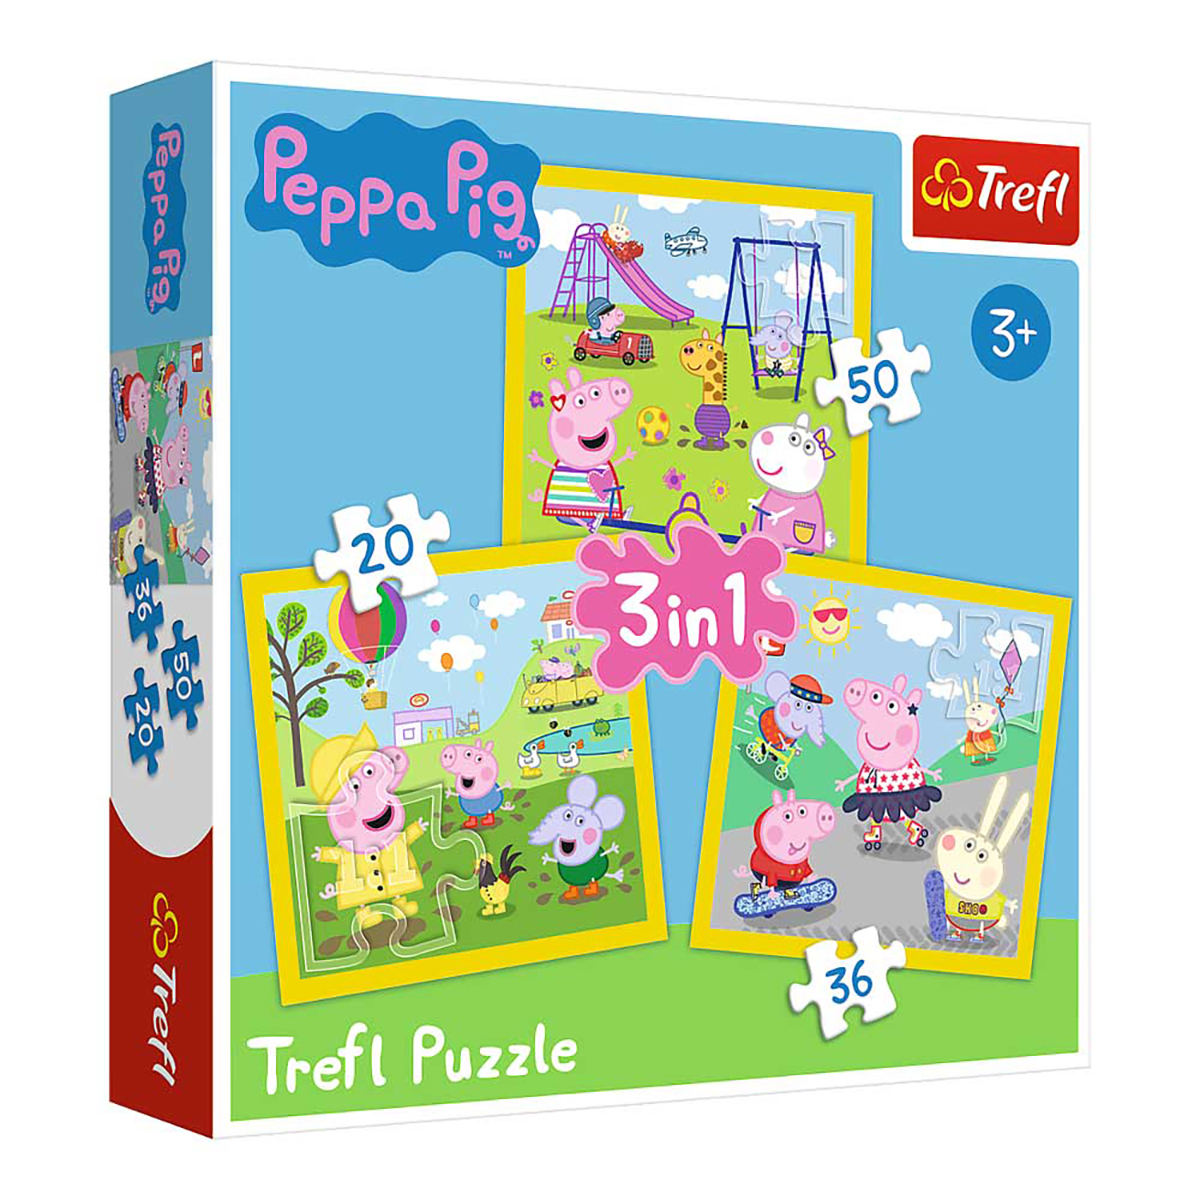 20-50 Puzzle Tag TREFL Peppa Puzzle schöner Teile Ein - 3in1 - Pig